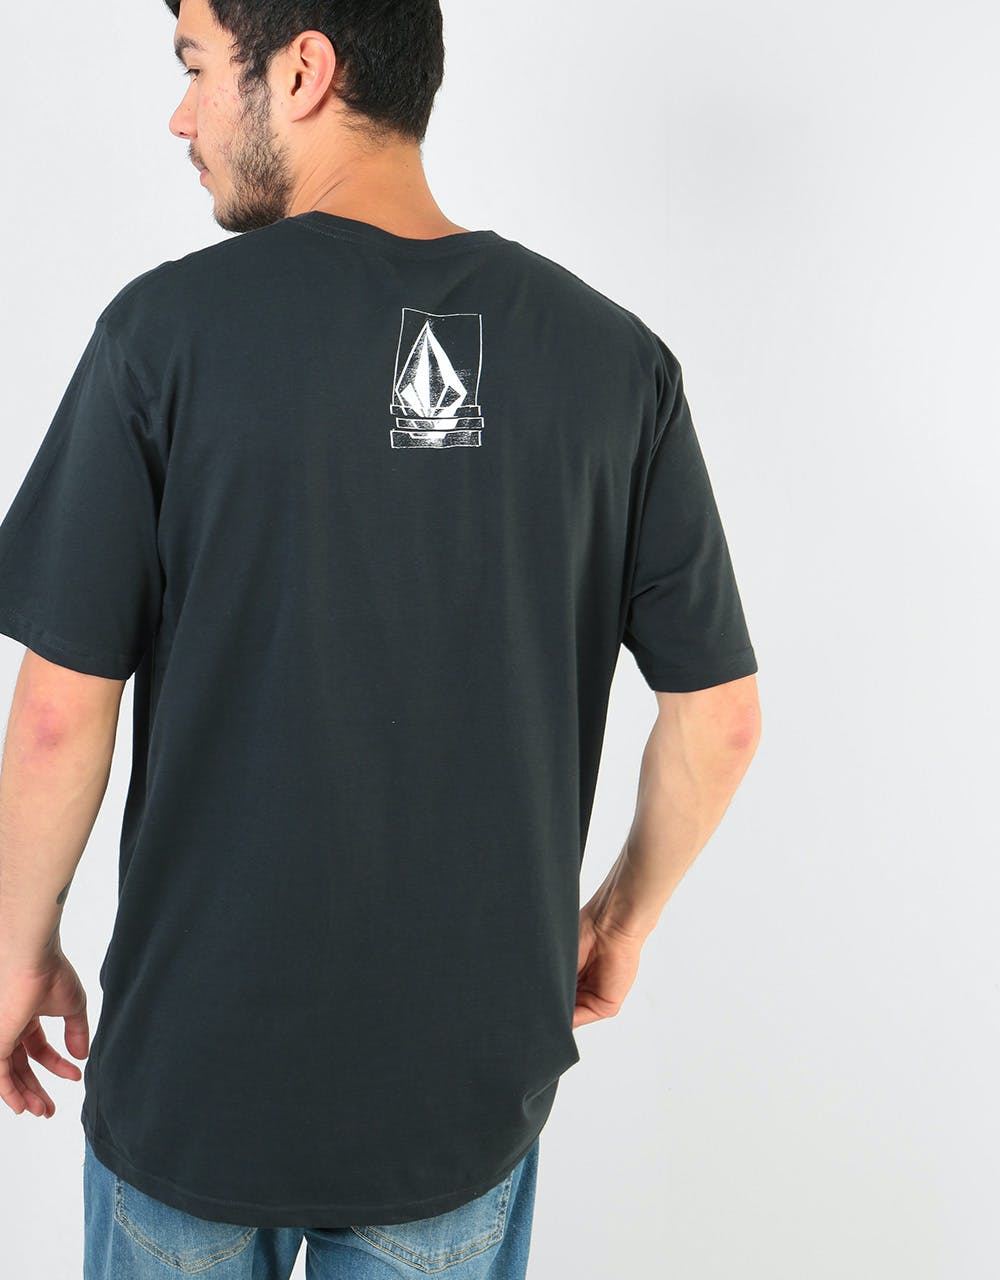 Volcom Chopped Edge Basic T-Shirt - Black